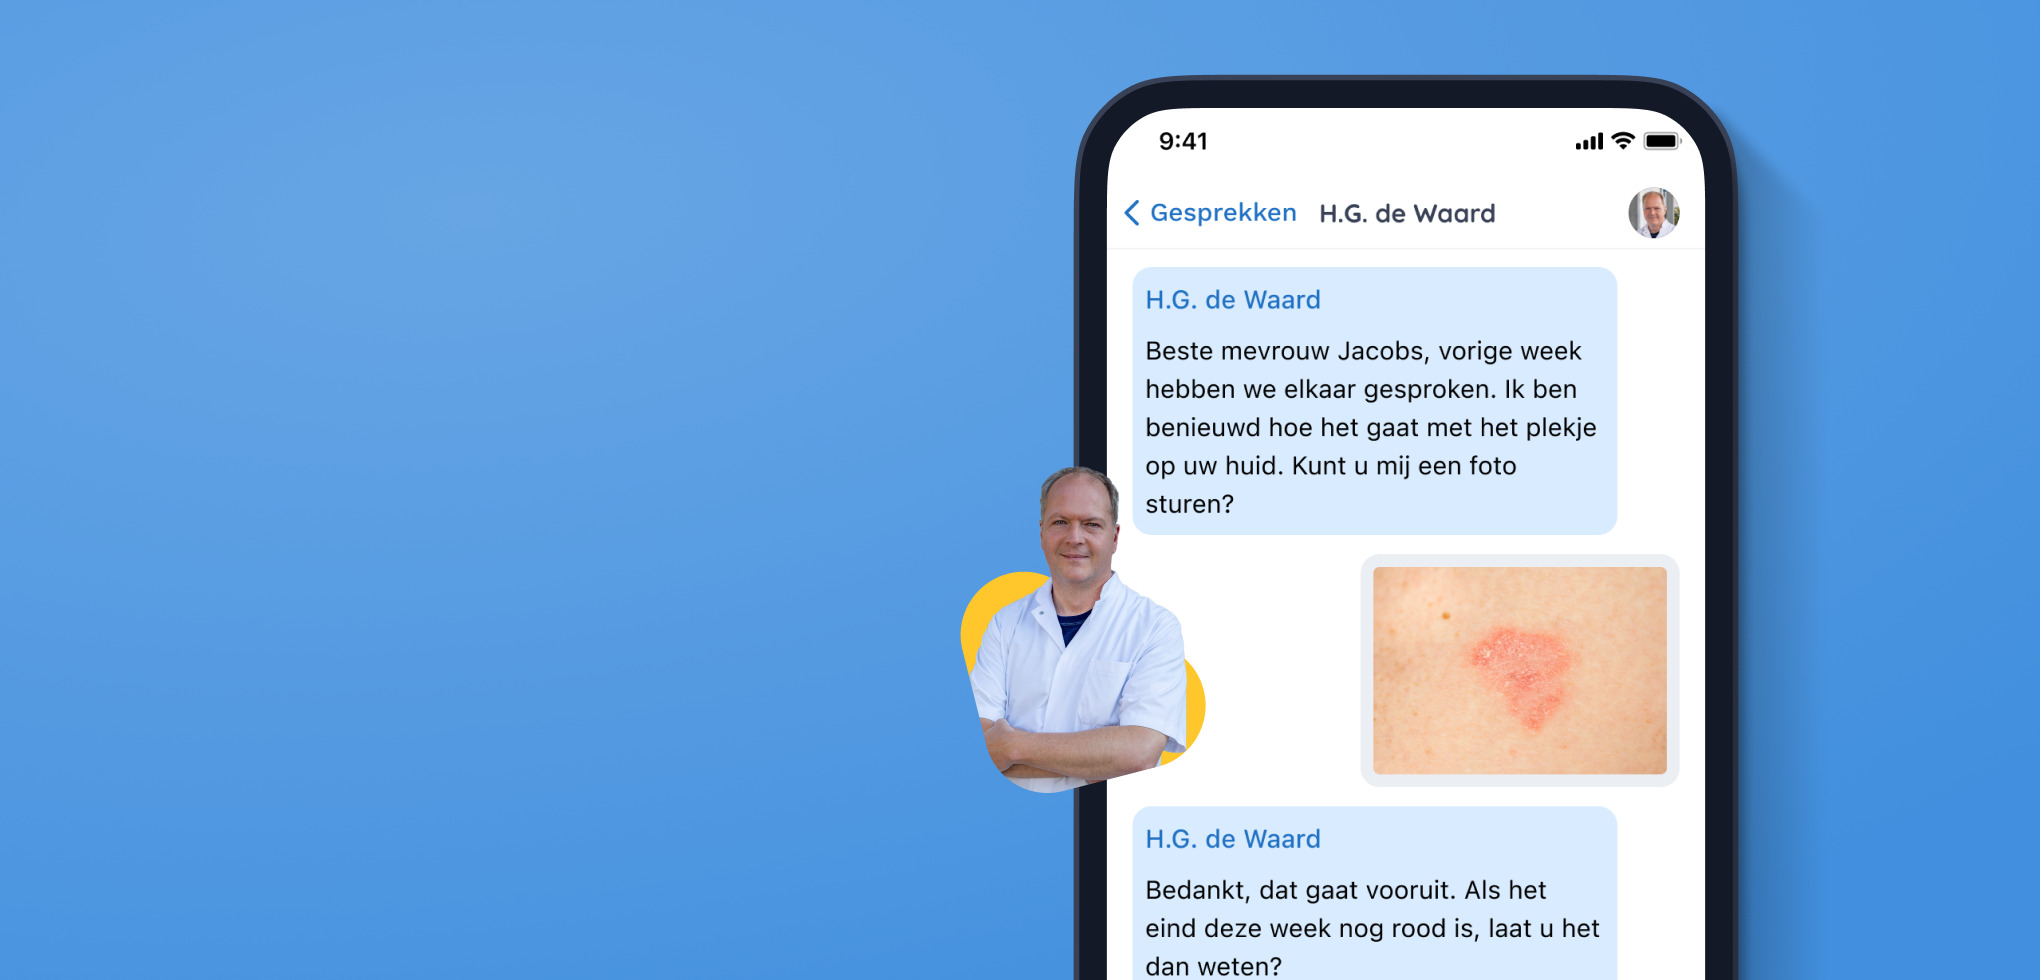 Gesprek over plekje op huid via de BeterDichtbij app.